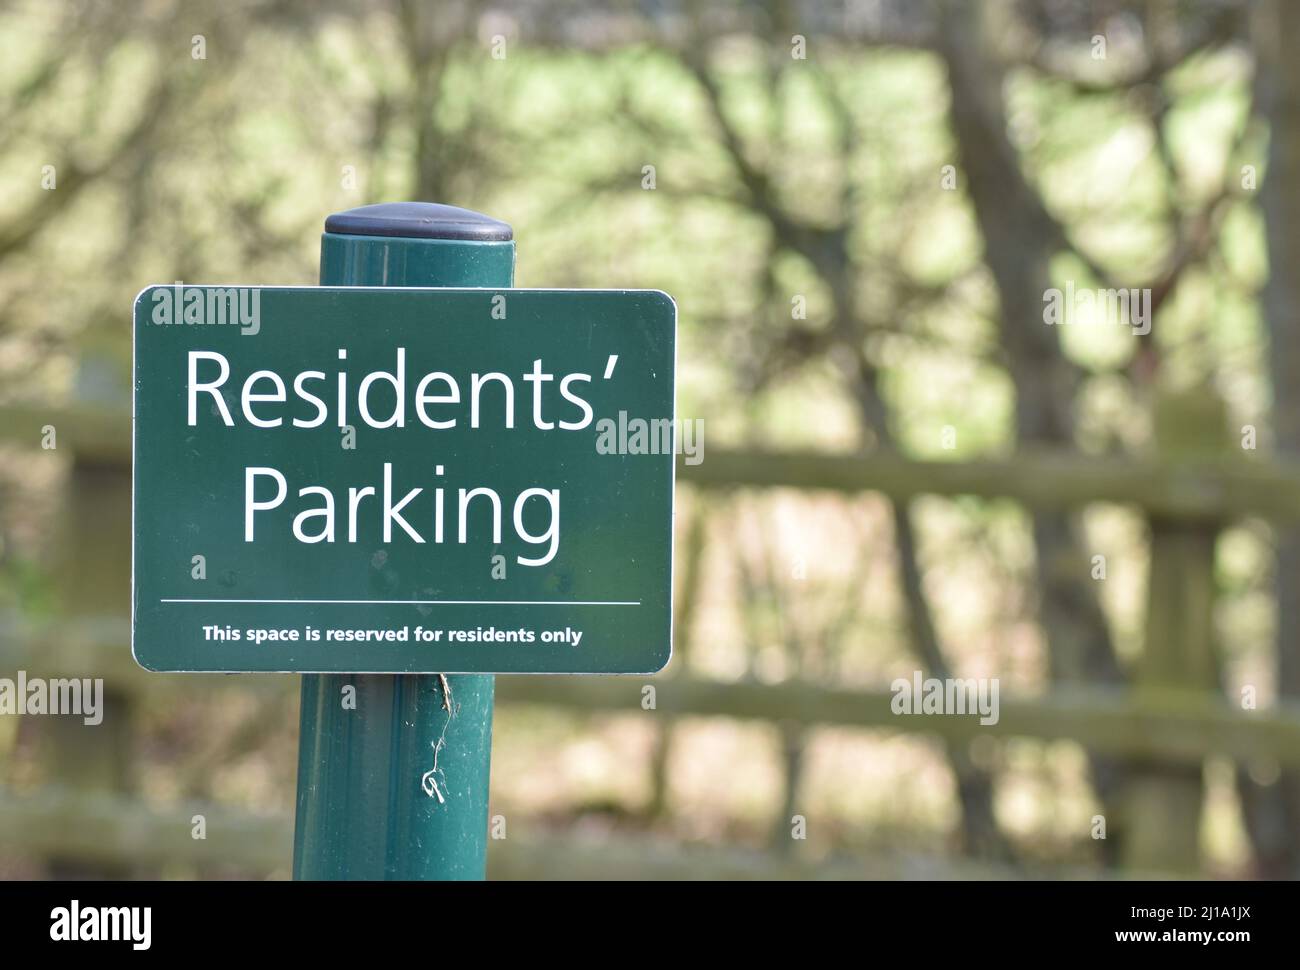 Avviso su un posto in un parcheggio auto: 'Residents' Parking' con spazio per fotocopie. Foto Stock